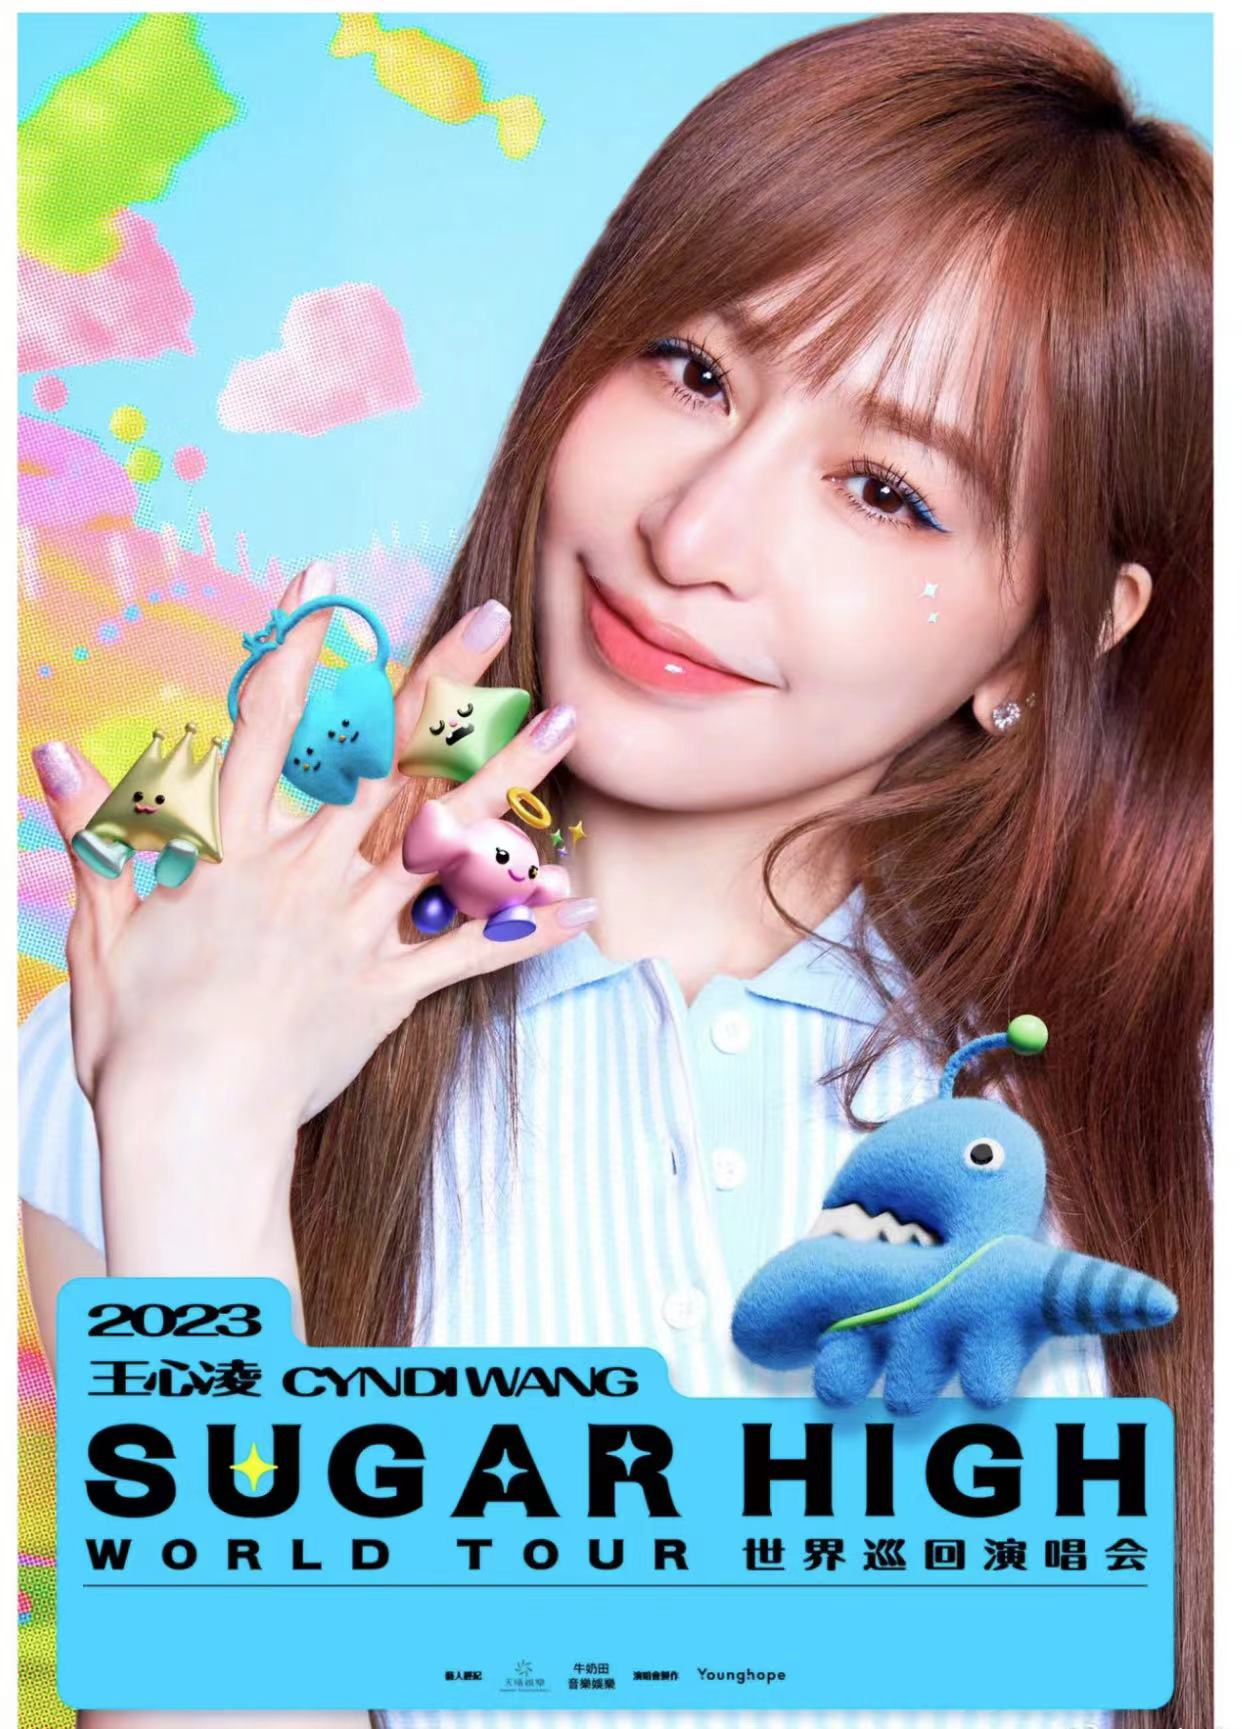 [深圳]王心凌 2023「sugar high」巡回演唱会-深圳站